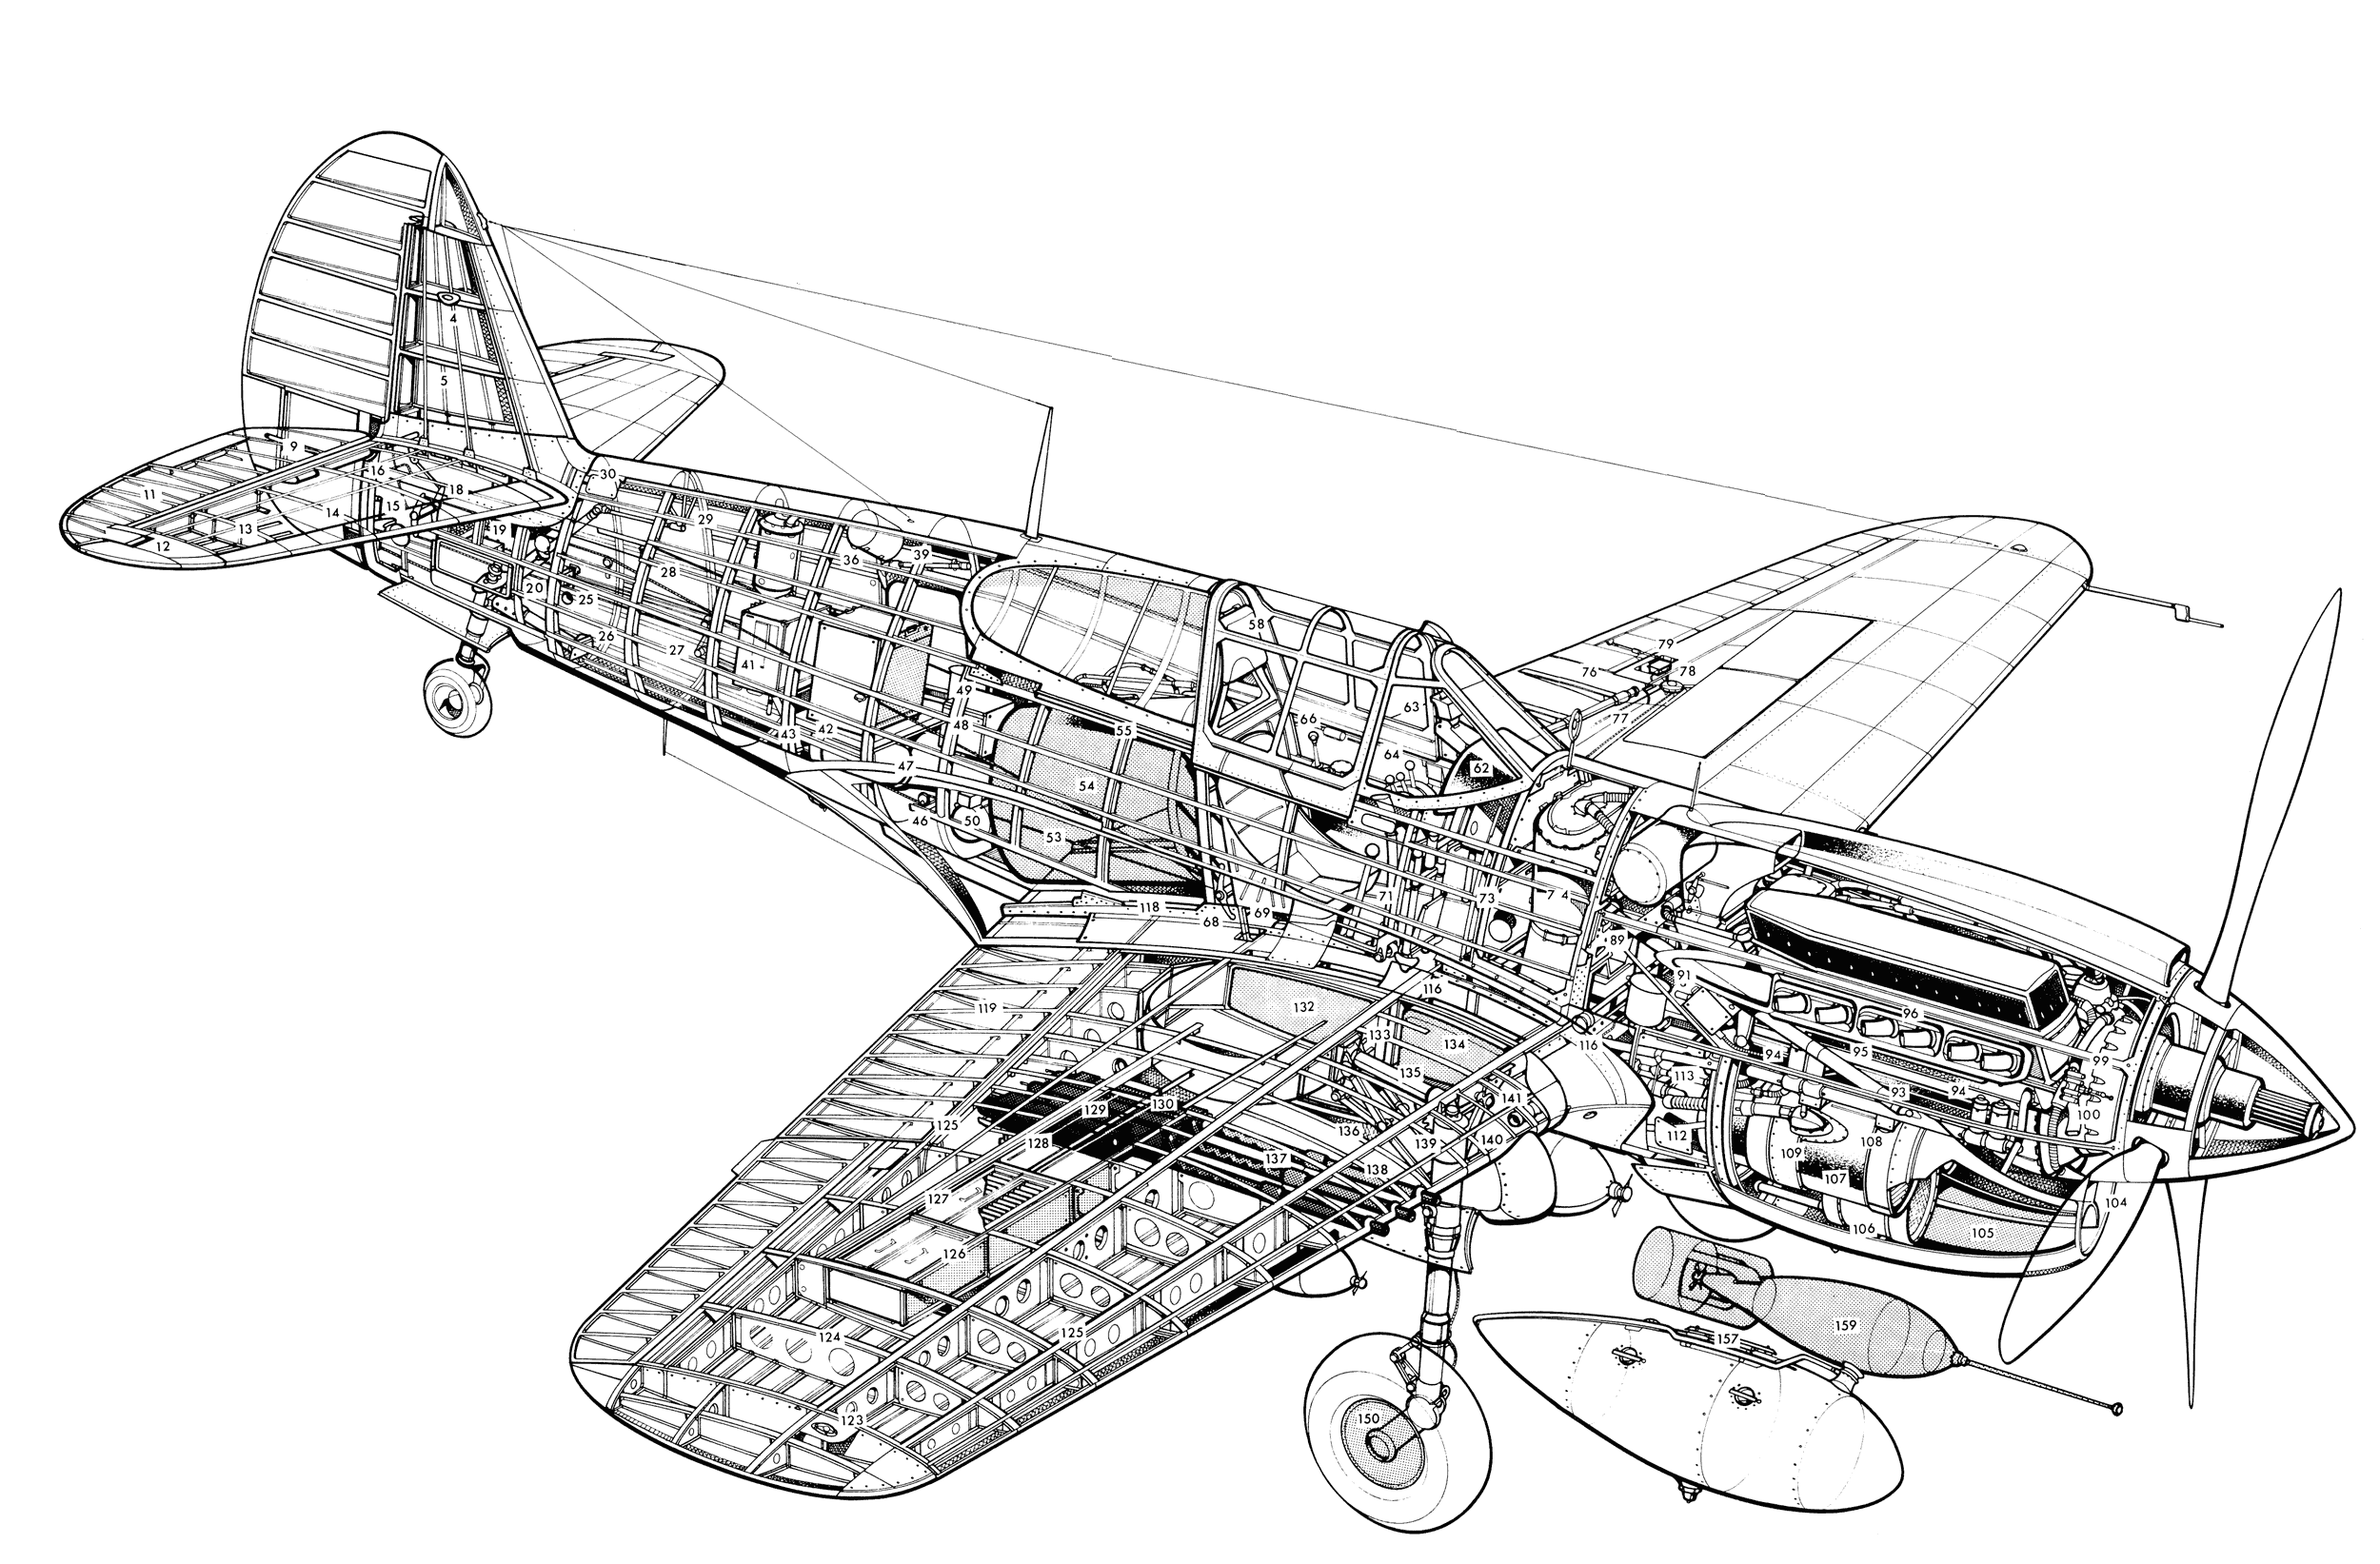 Curtiss P-40 Kittyhawk cutaway